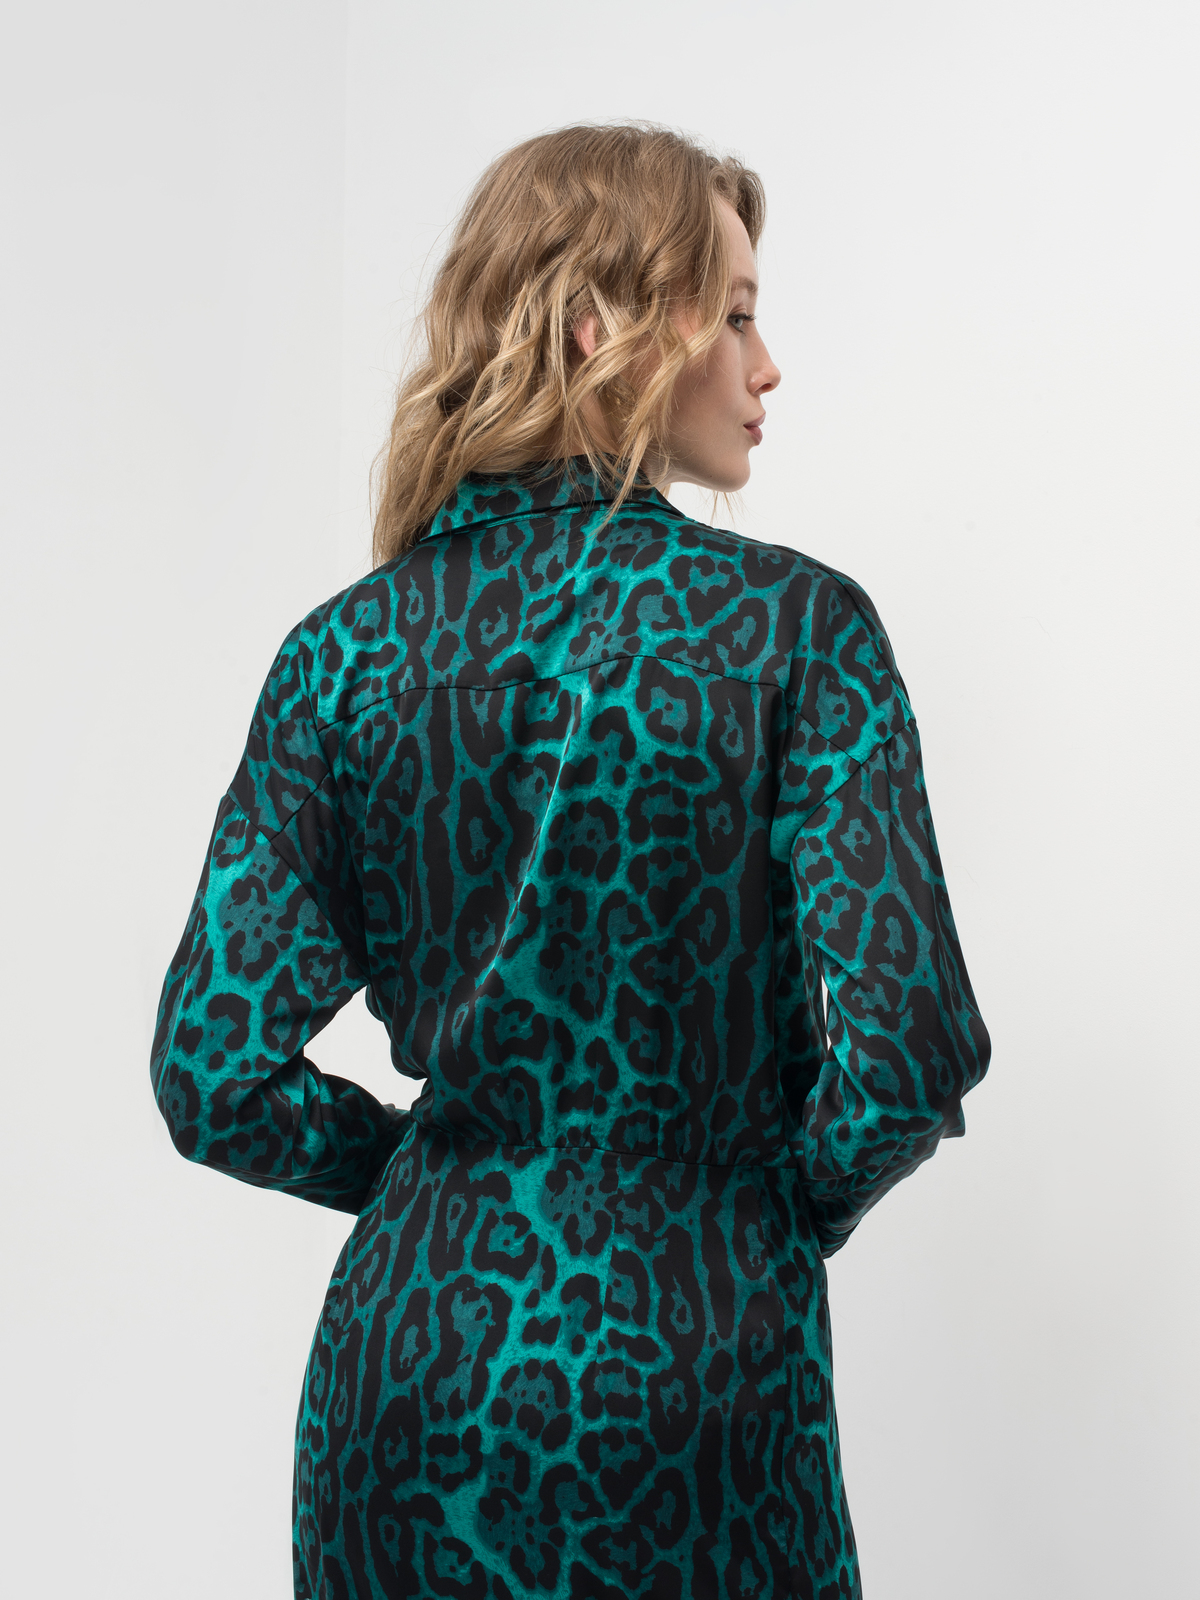 Изумрудное платье с принтом леопард